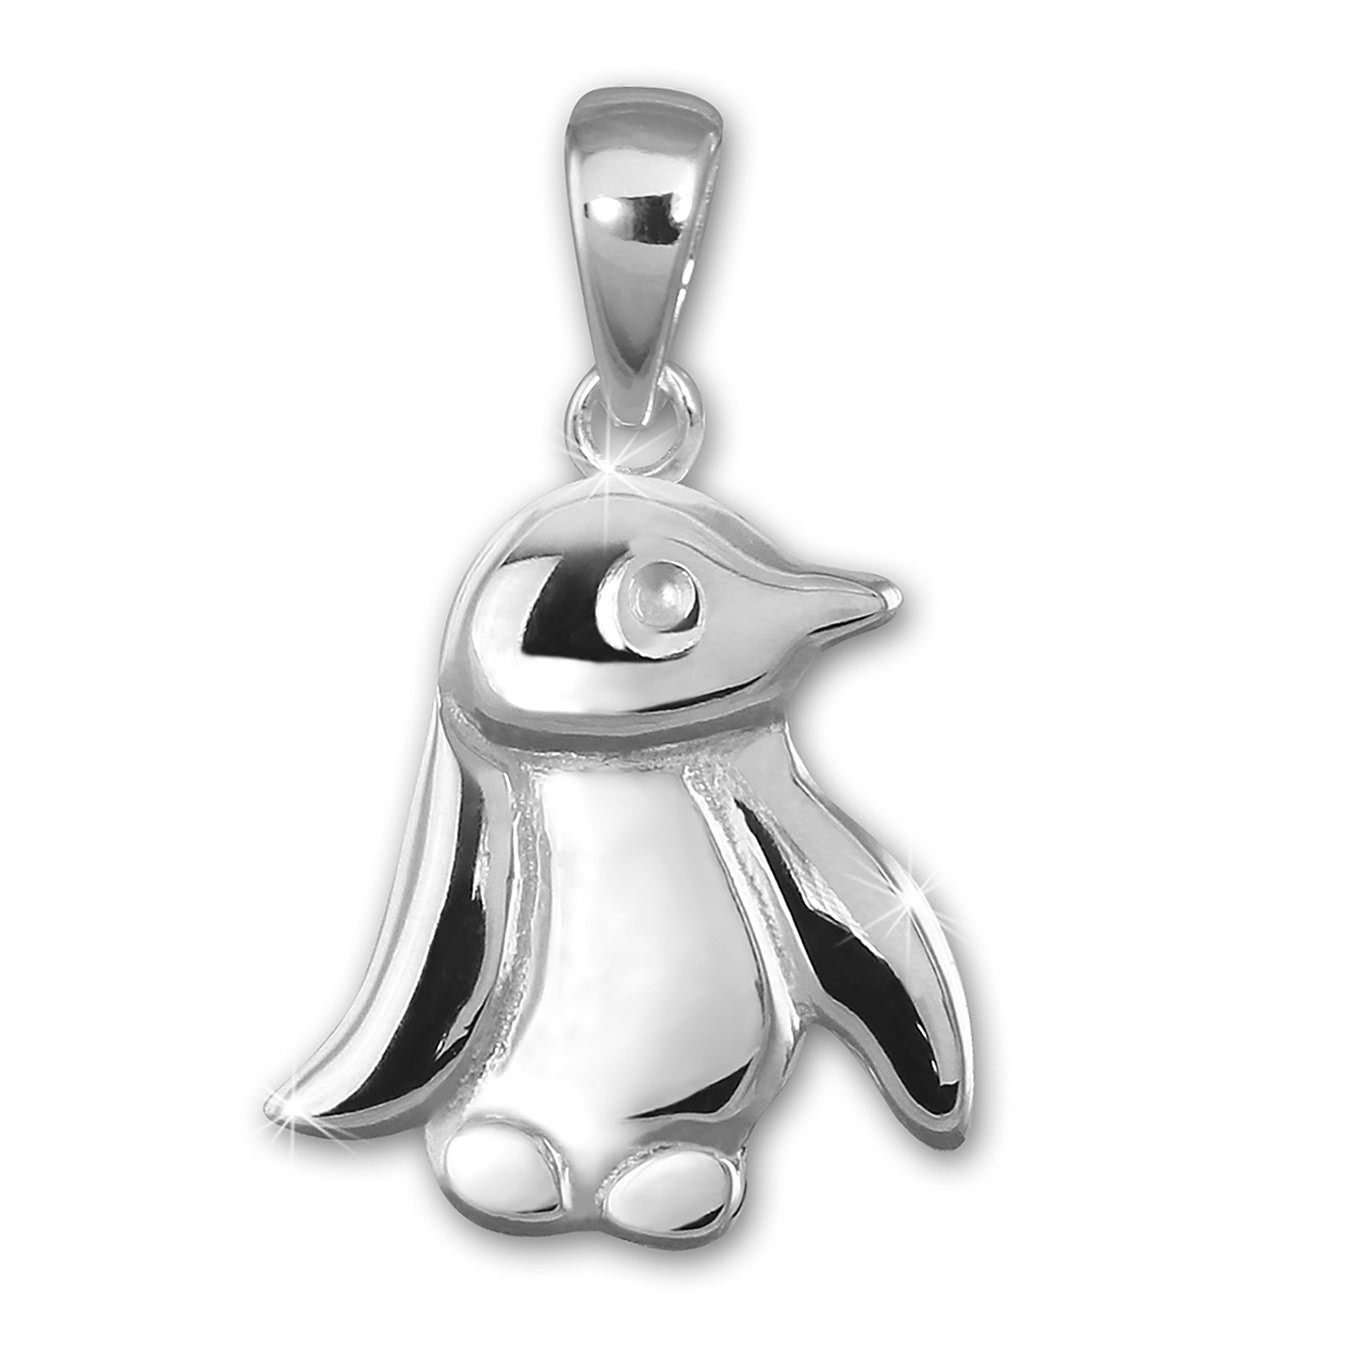 Teenie-Weenie Kettenanhänger Teenie-Weenie Ketten Anhänger Pinguin, Pinguin Kettenanhänger 925 Sterling Silber, Farbe: silber